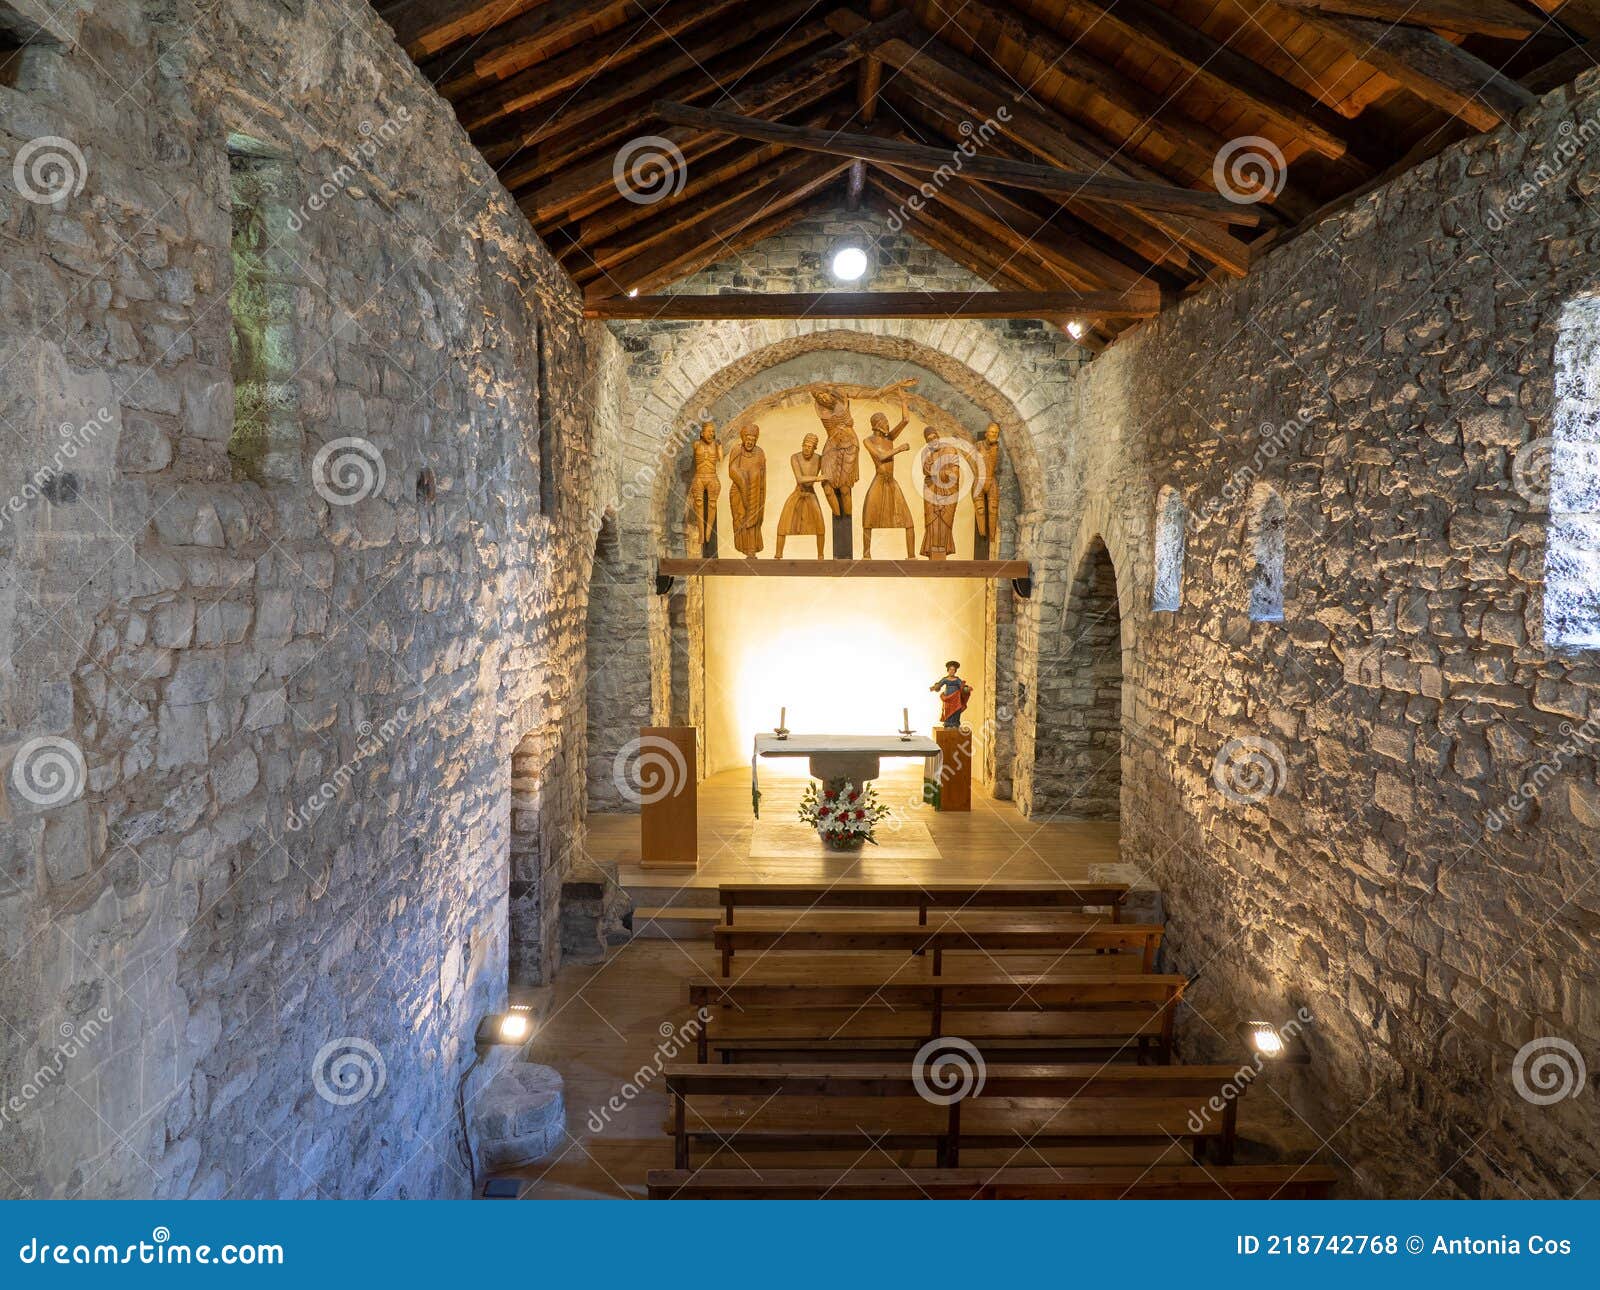 roman church of santa eulalia in erill la vall, in the boi valley,catalonia - spain